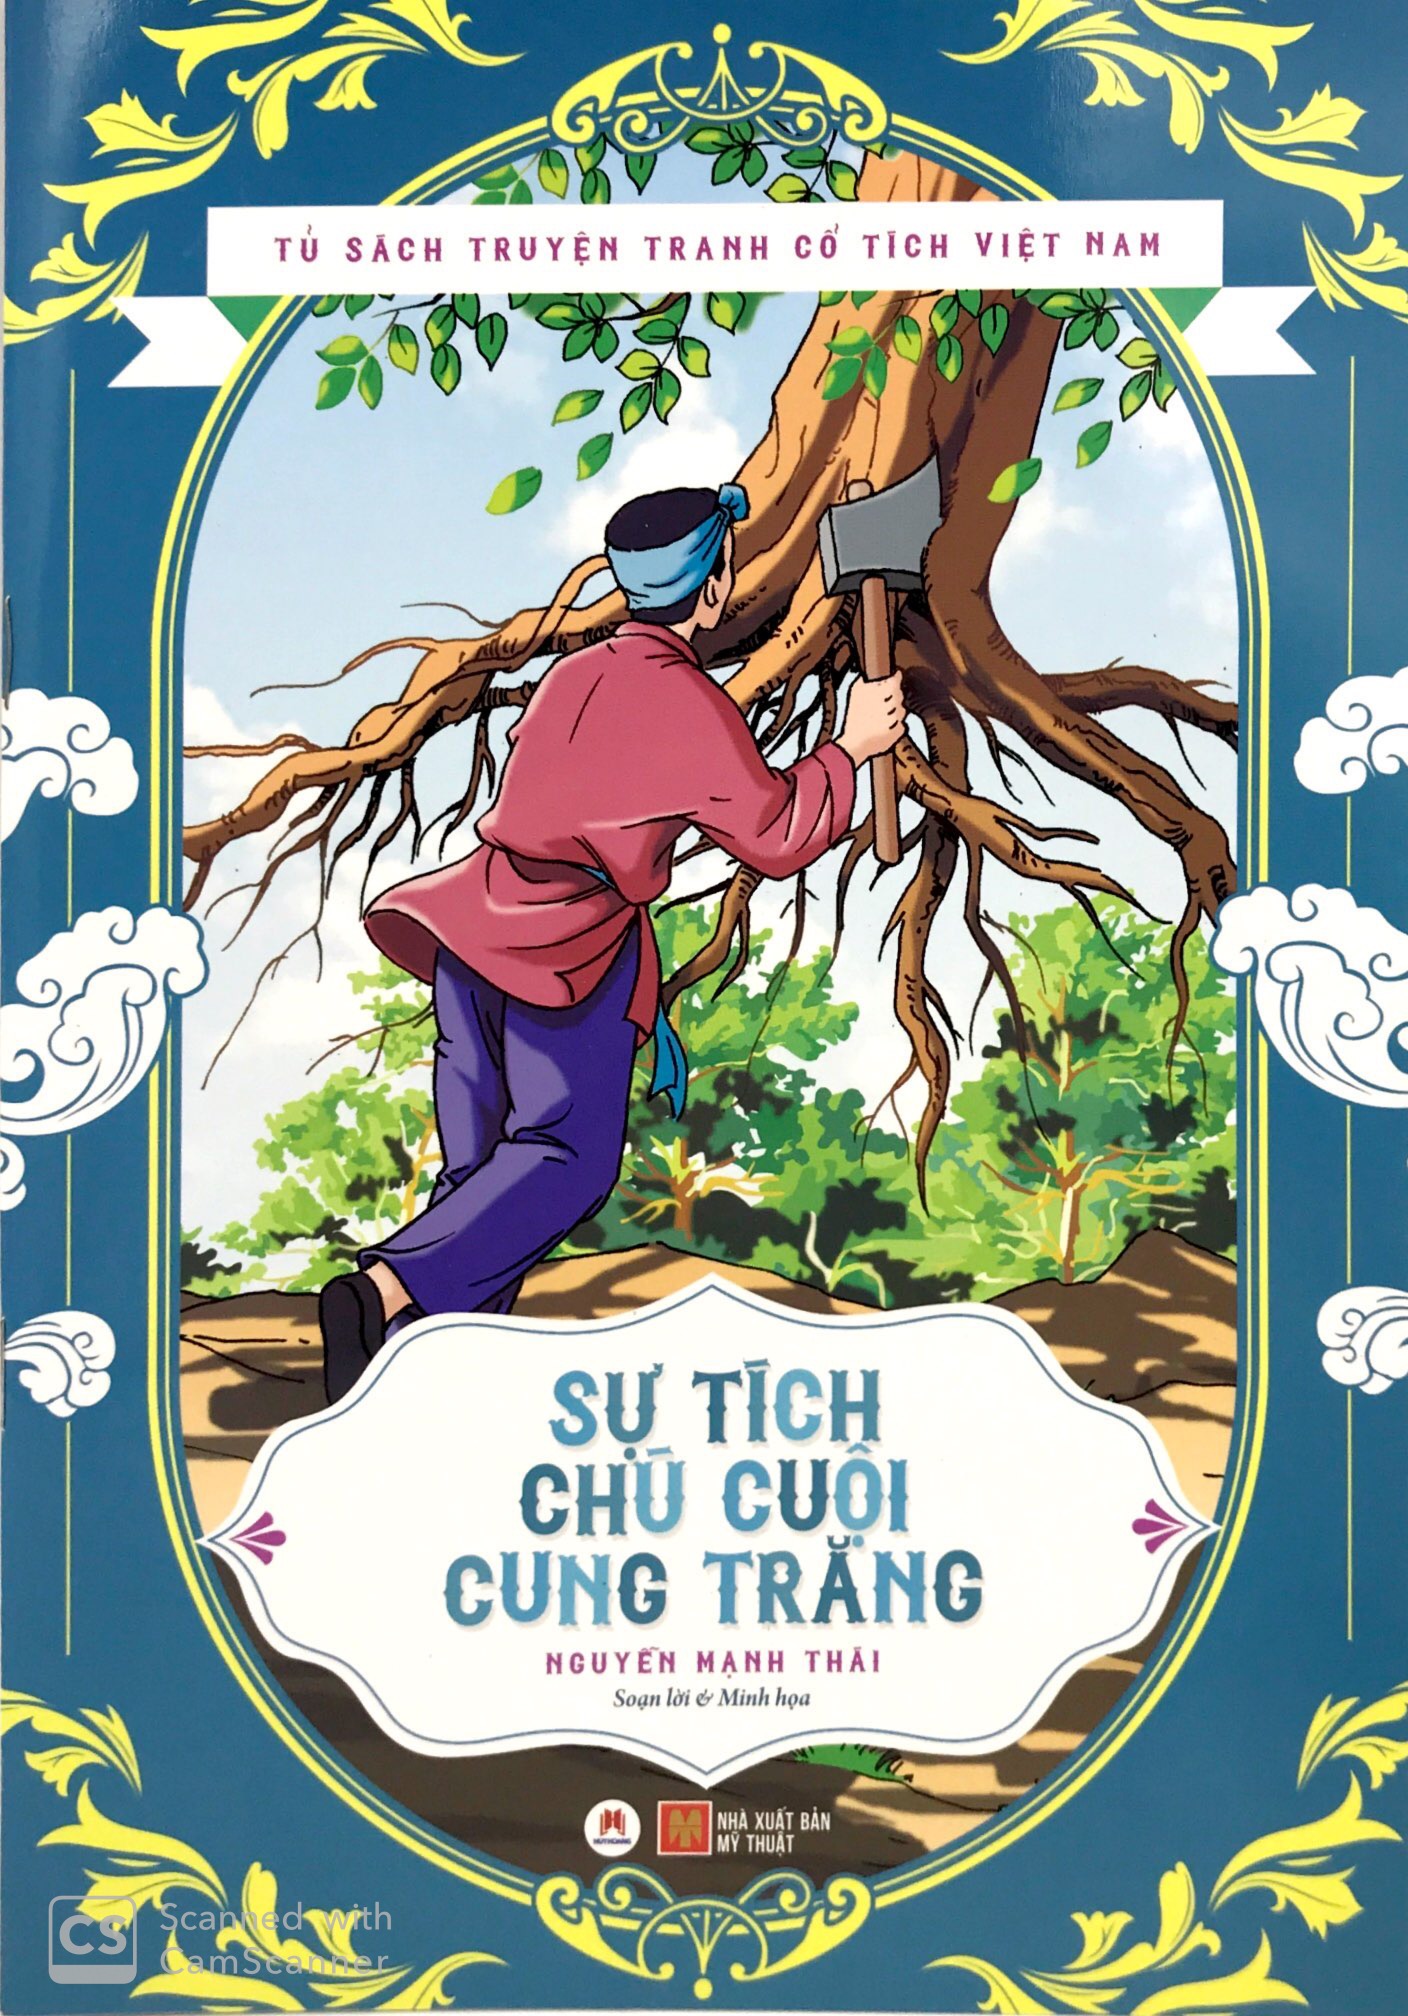 Sách truyện tranh cổ tích Việt Nam sẽ đưa bạn vào một thế giới thần tiên đầy màu sắc với những câu chuyện tuyệt vời về những vị anh hùng, nhân vật phong phú và đầy sáng tạo.